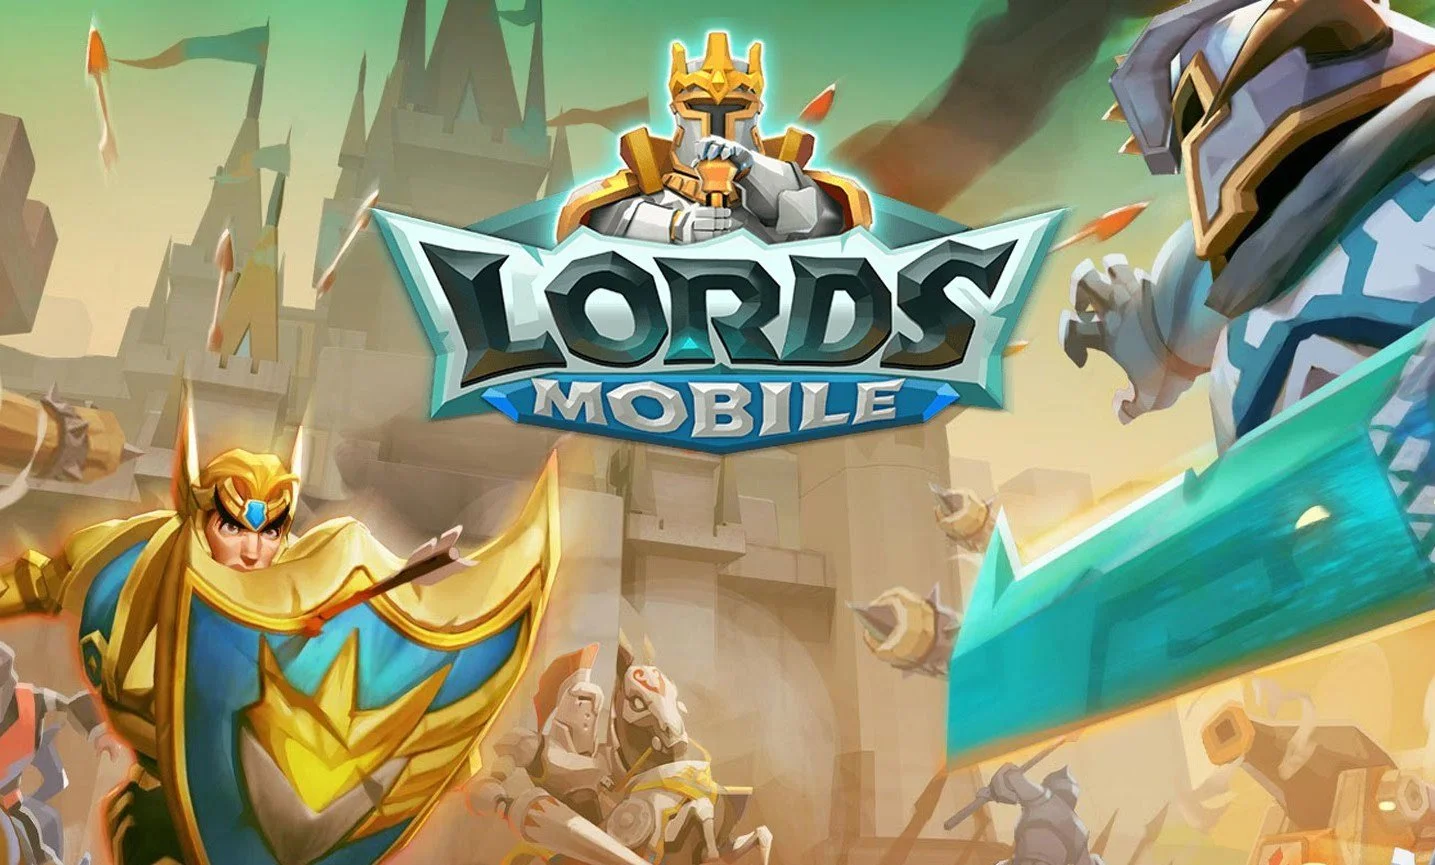 Lords Mobile — новая онлайн-стратегия для iOS и Android, в которой вы будете отстраивать замки, собирать могущественных героев, тренировать воинов и участвовать в эпичных PvP-сражениях.